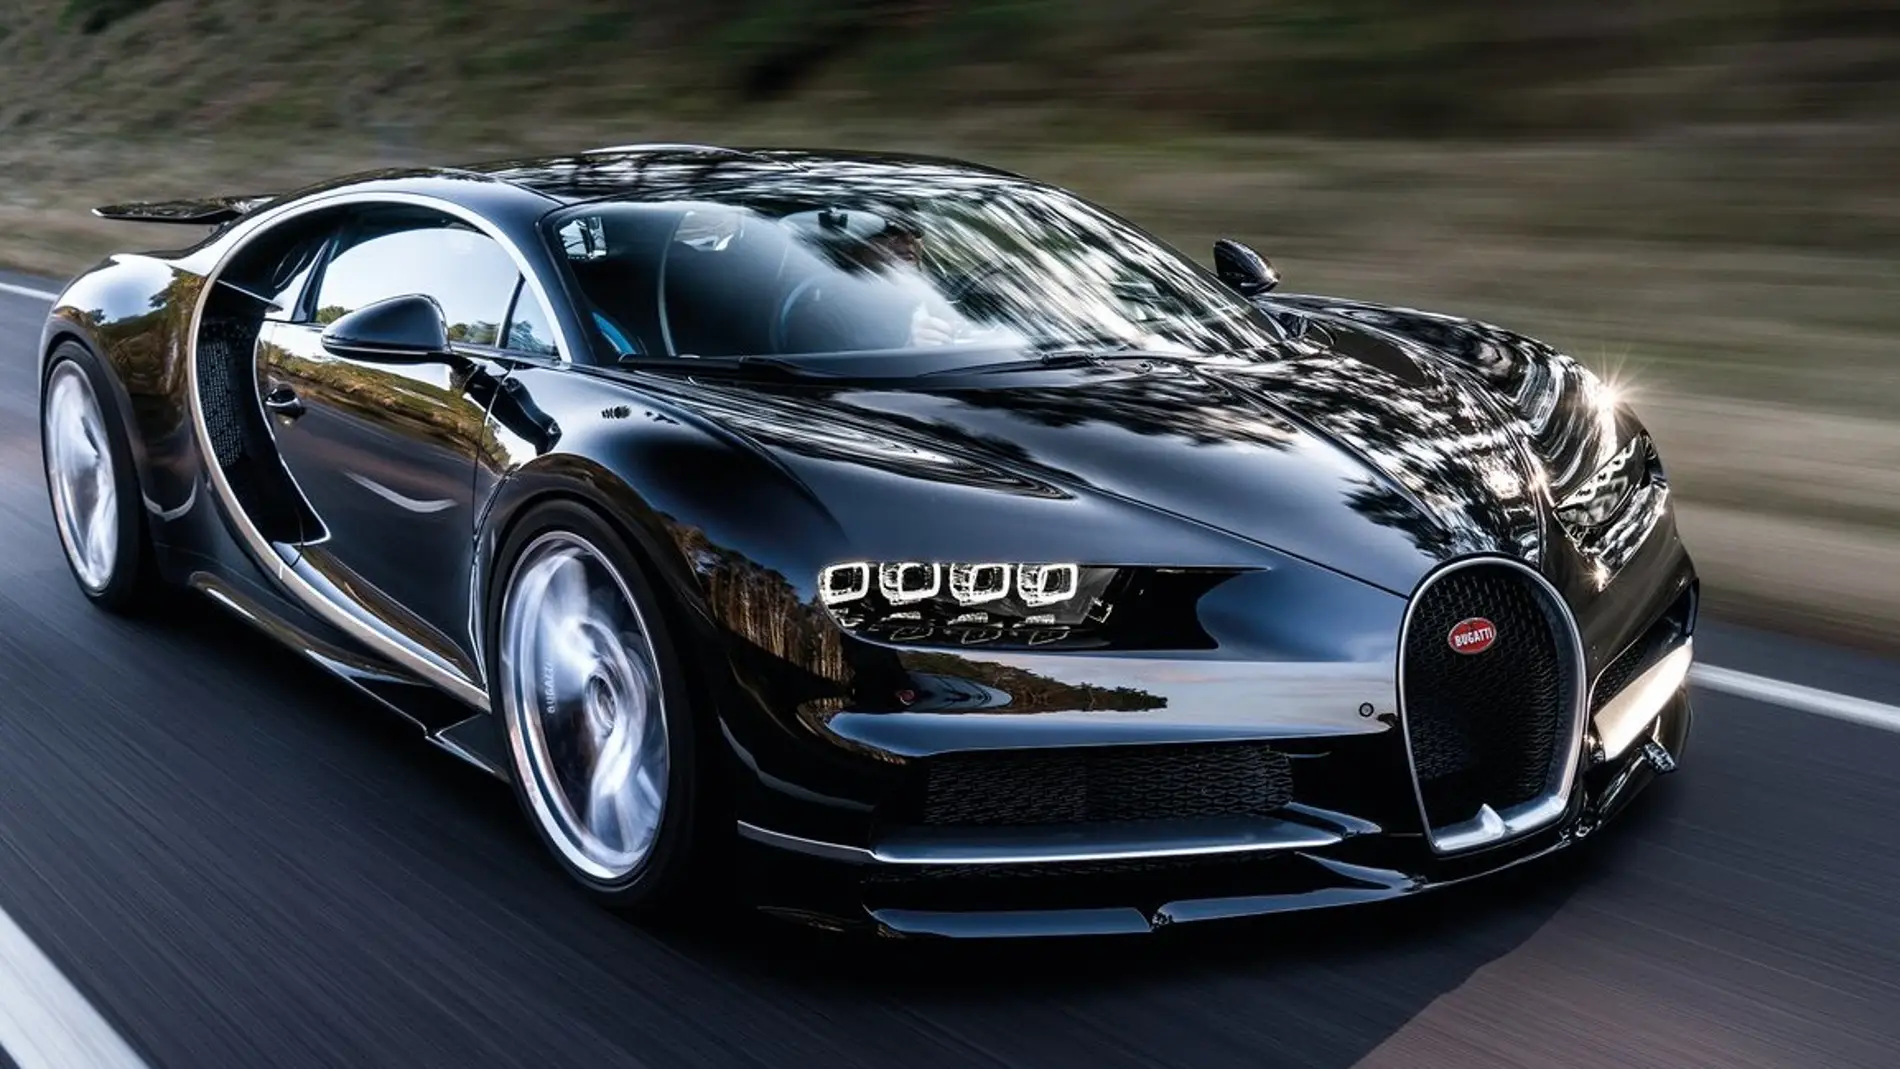 Bugatti-Chiron-2017-1280-15-e1506258436284.jpg